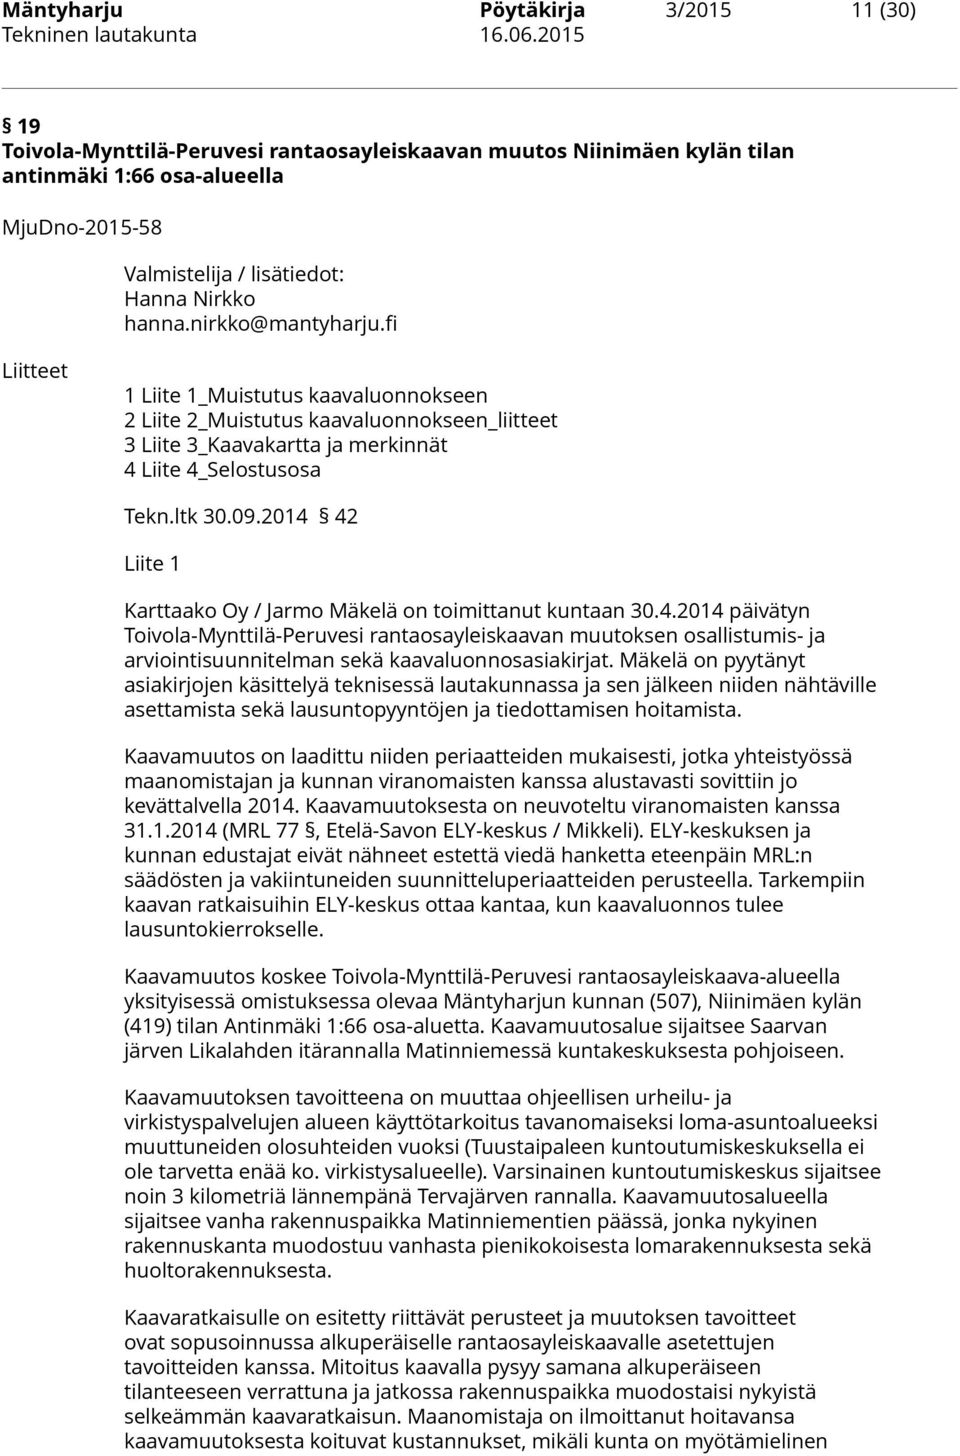 2014 42 Liite 1 Karttaako Oy / Jarmo Mäkelä on toimittanut kuntaan 30.4.2014 päivätyn Toivola-Mynttilä-Peruvesi rantaosayleiskaavan muutoksen osallistumis- ja arviointisuunnitelman sekä kaavaluonnosasiakirjat.